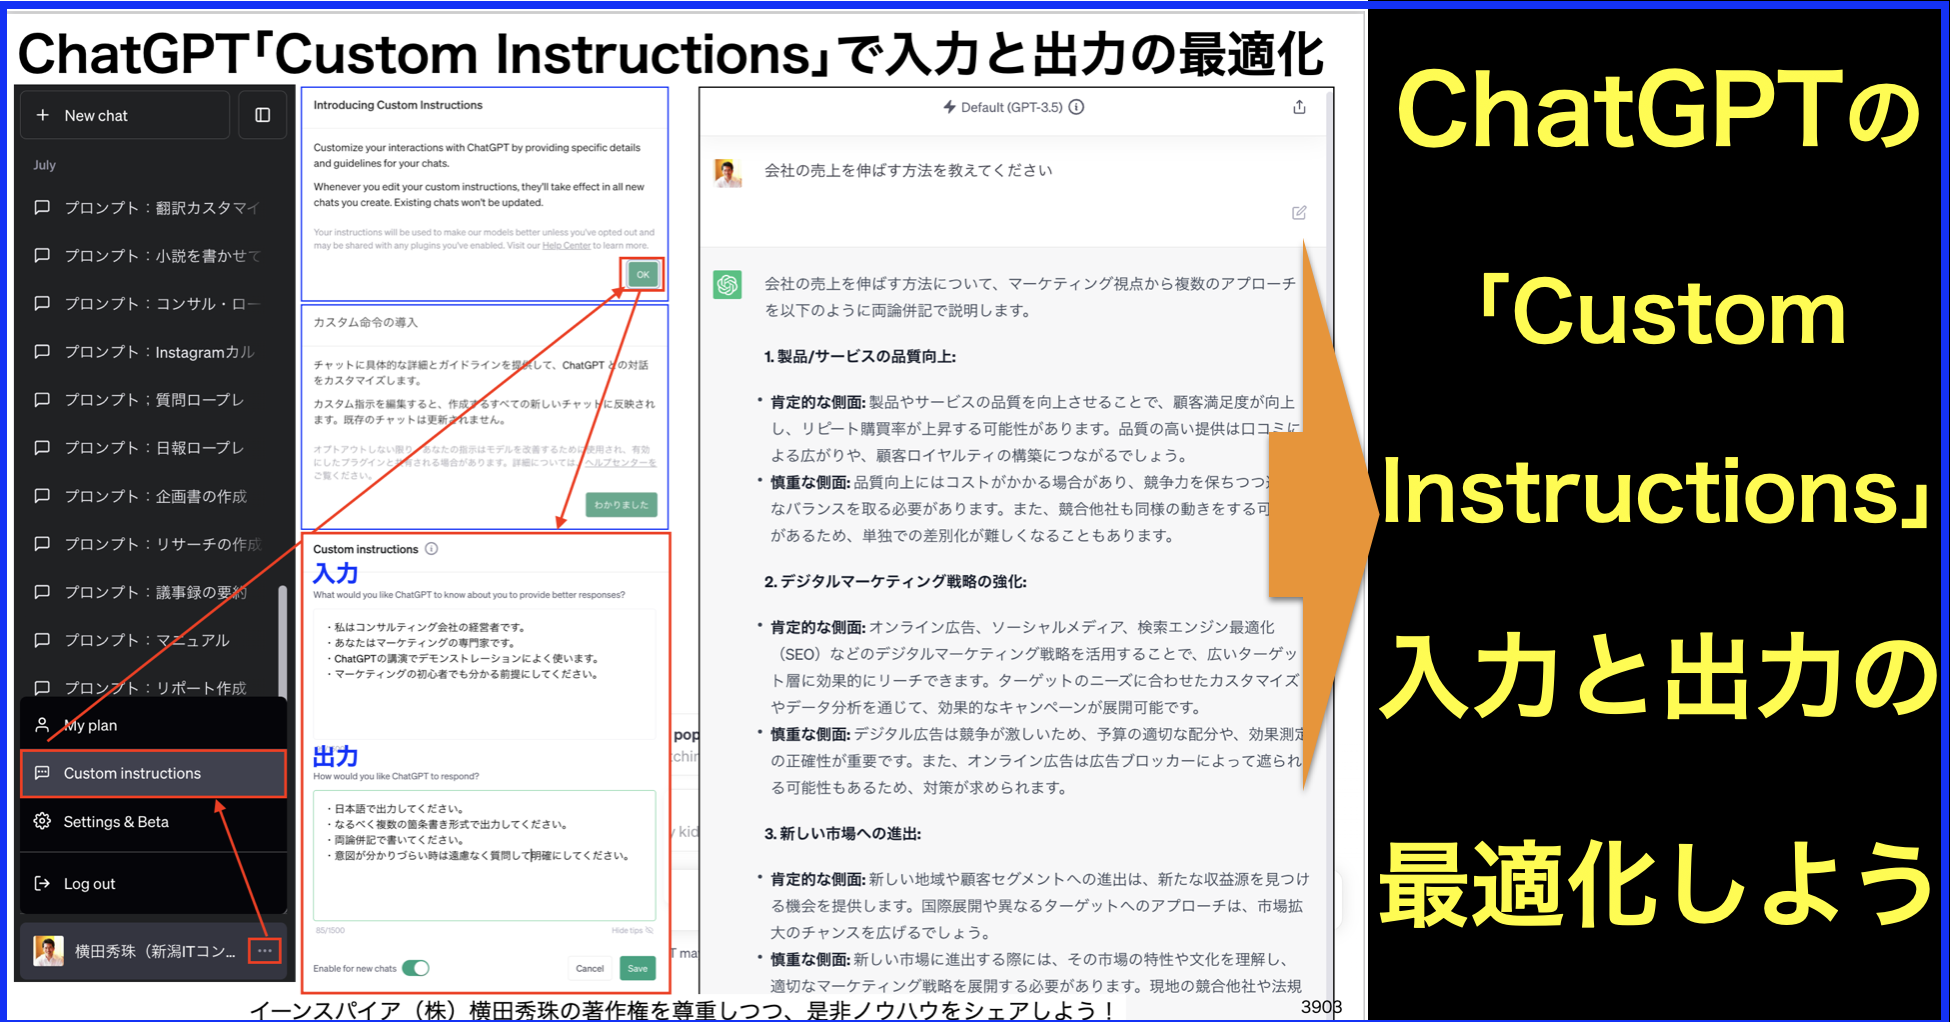 ChatGPT｢Custom Instructions｣無料化！入力と出力を最適化